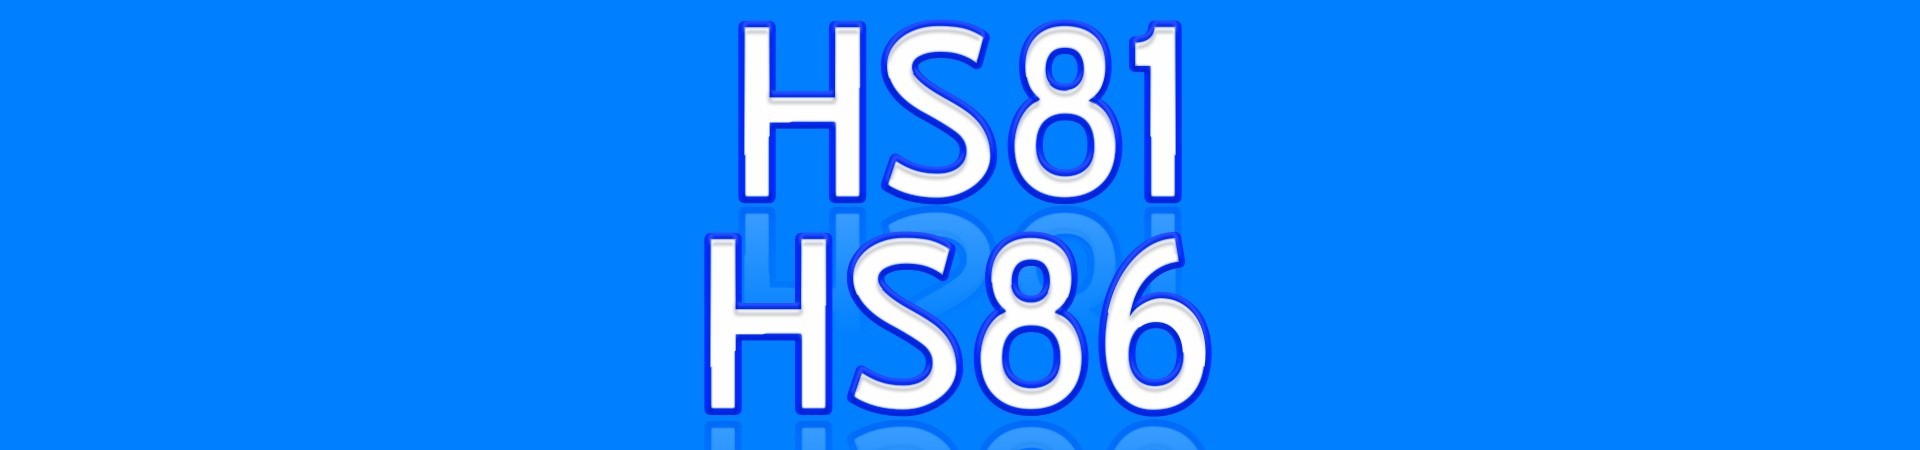 HS81 HS86